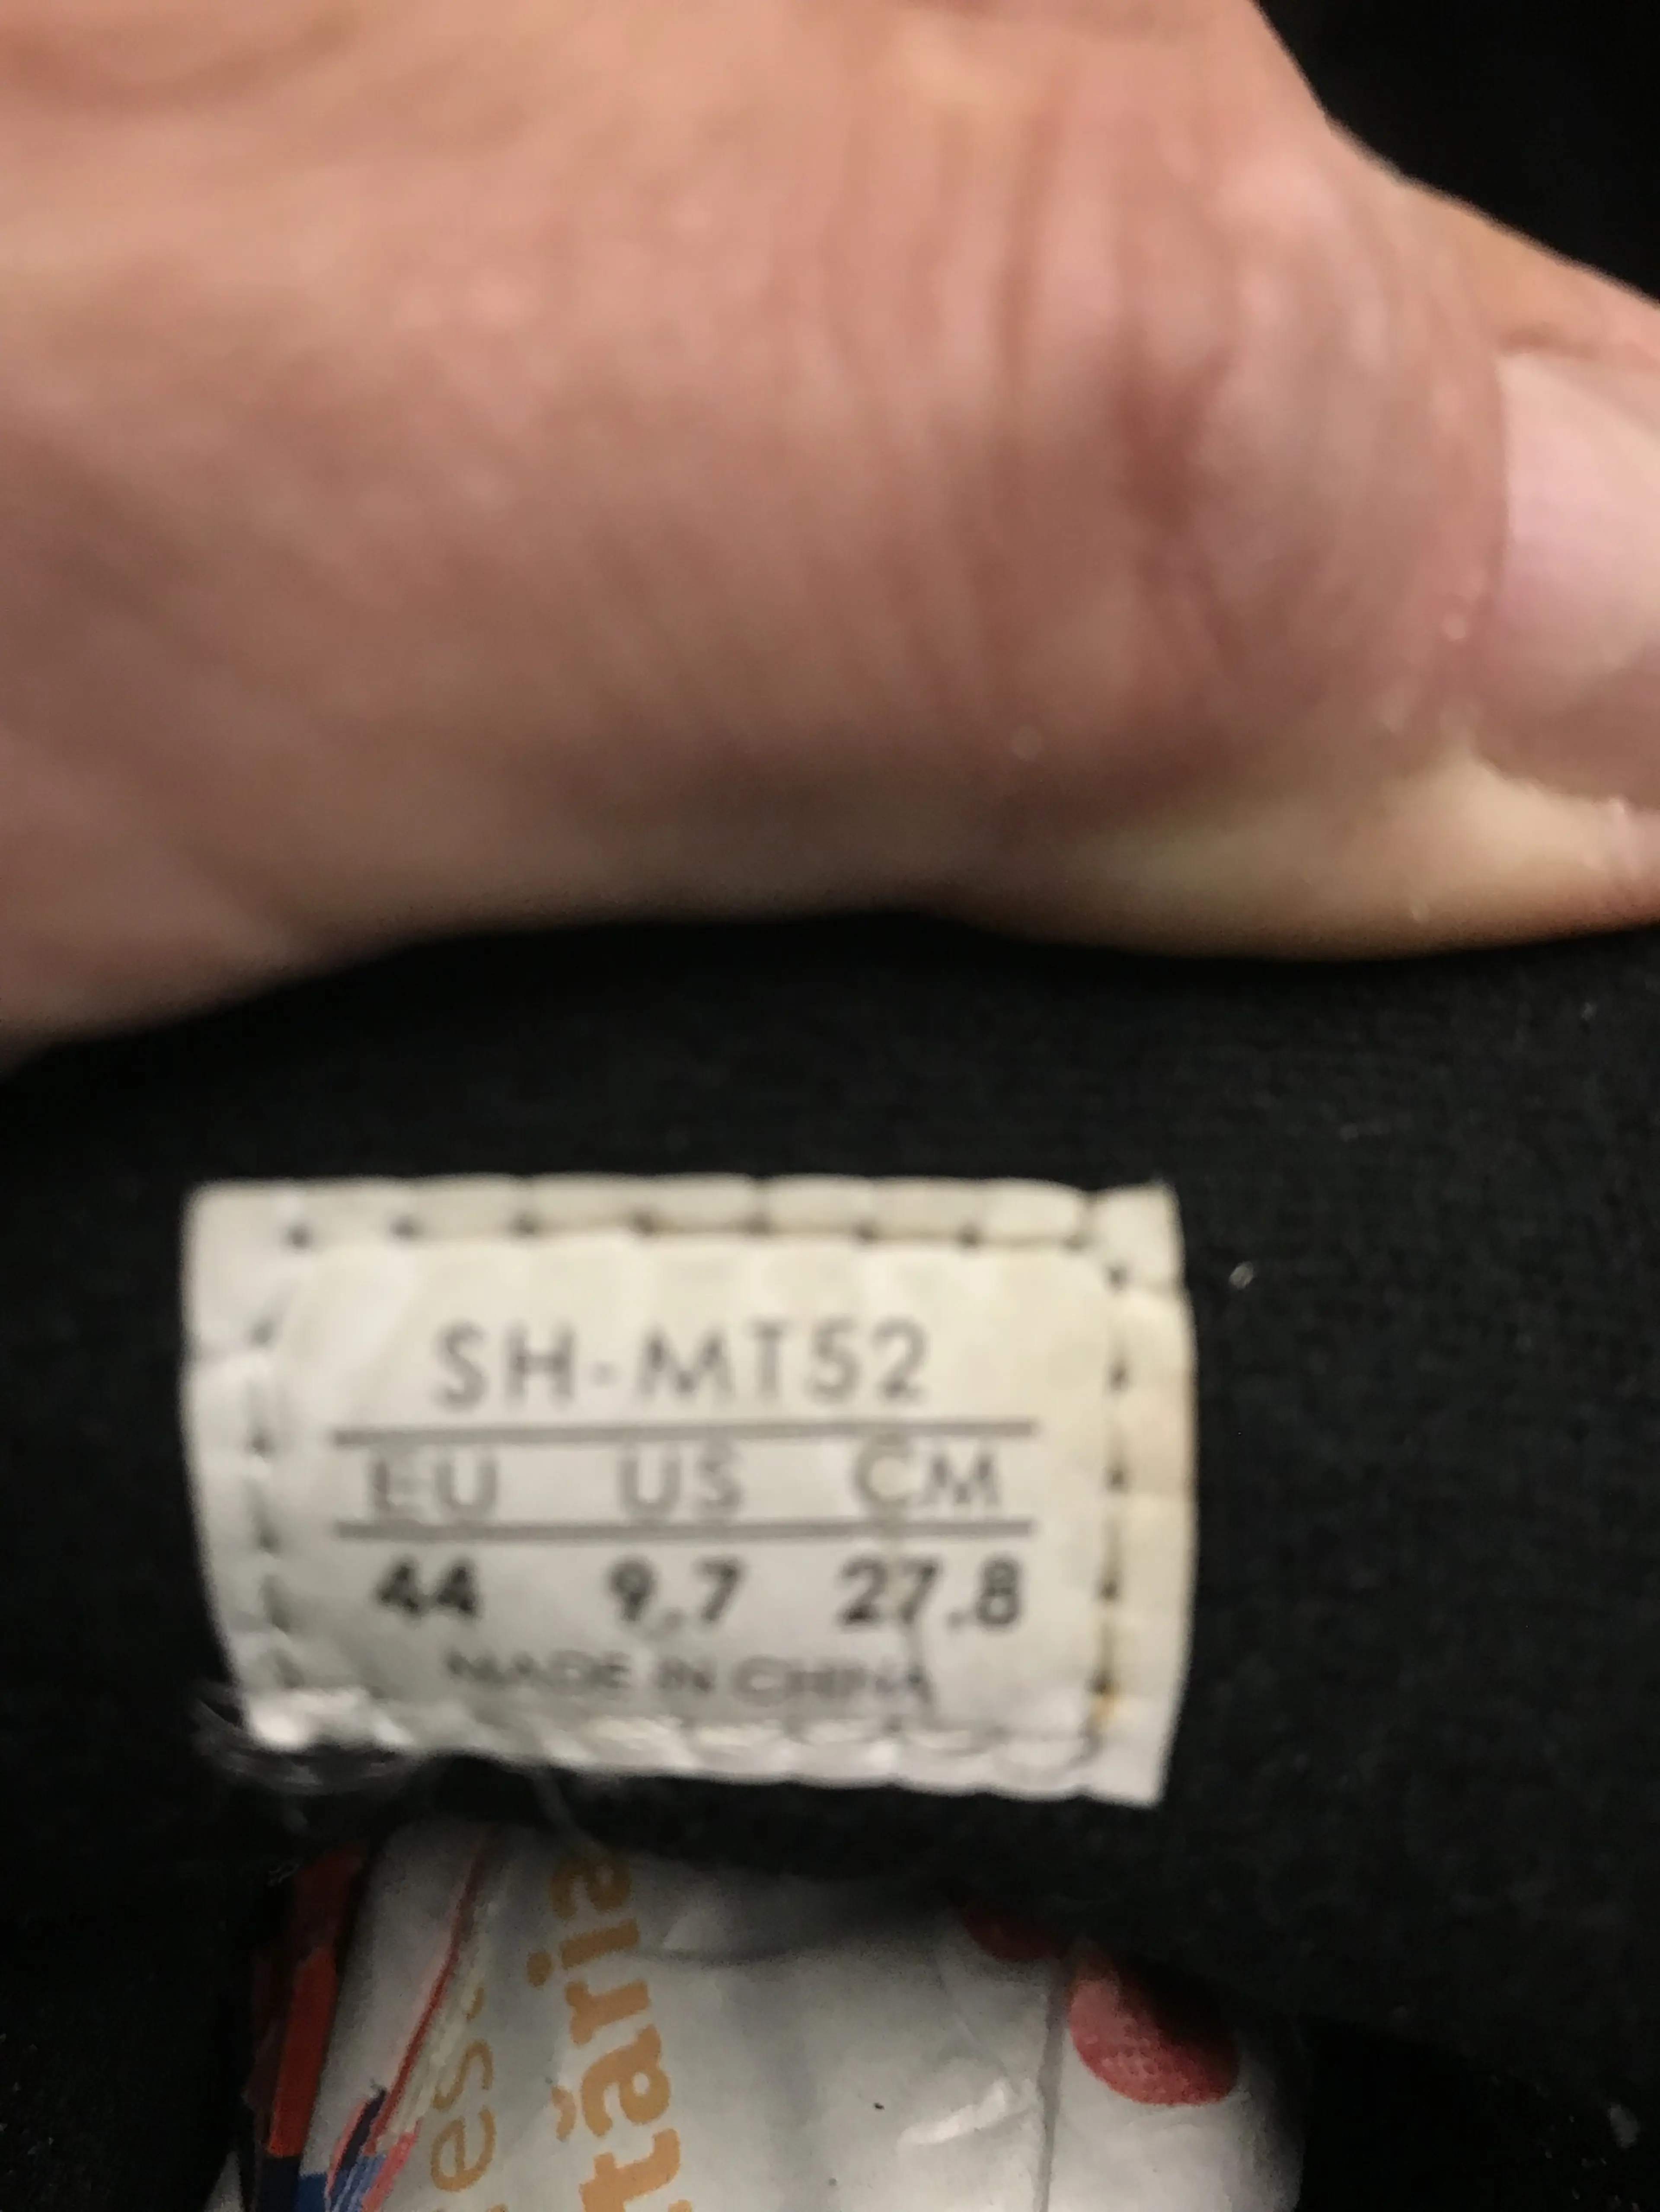 Image Pantofi Shimano Sh-MT52 nr 44, 27.8 cm